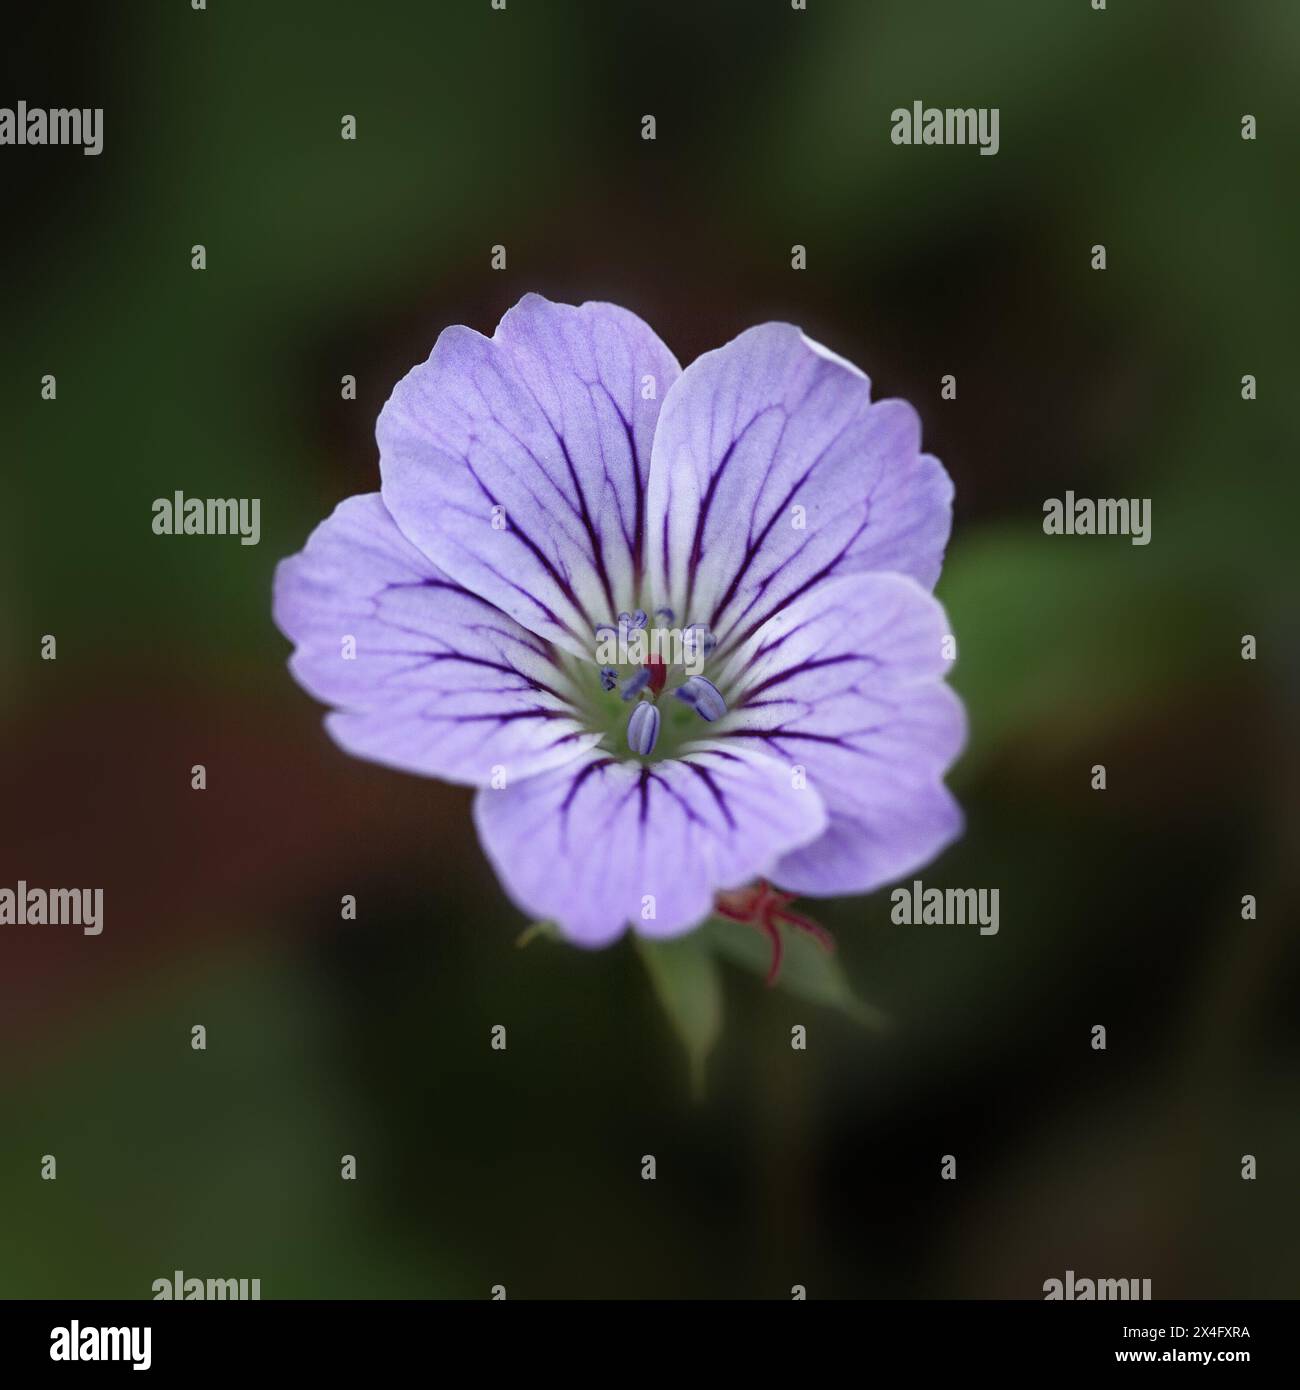 Closeup of a single flower of cranesbill  (Geranium nodosum 'Svelte Lilac') Stock Photo